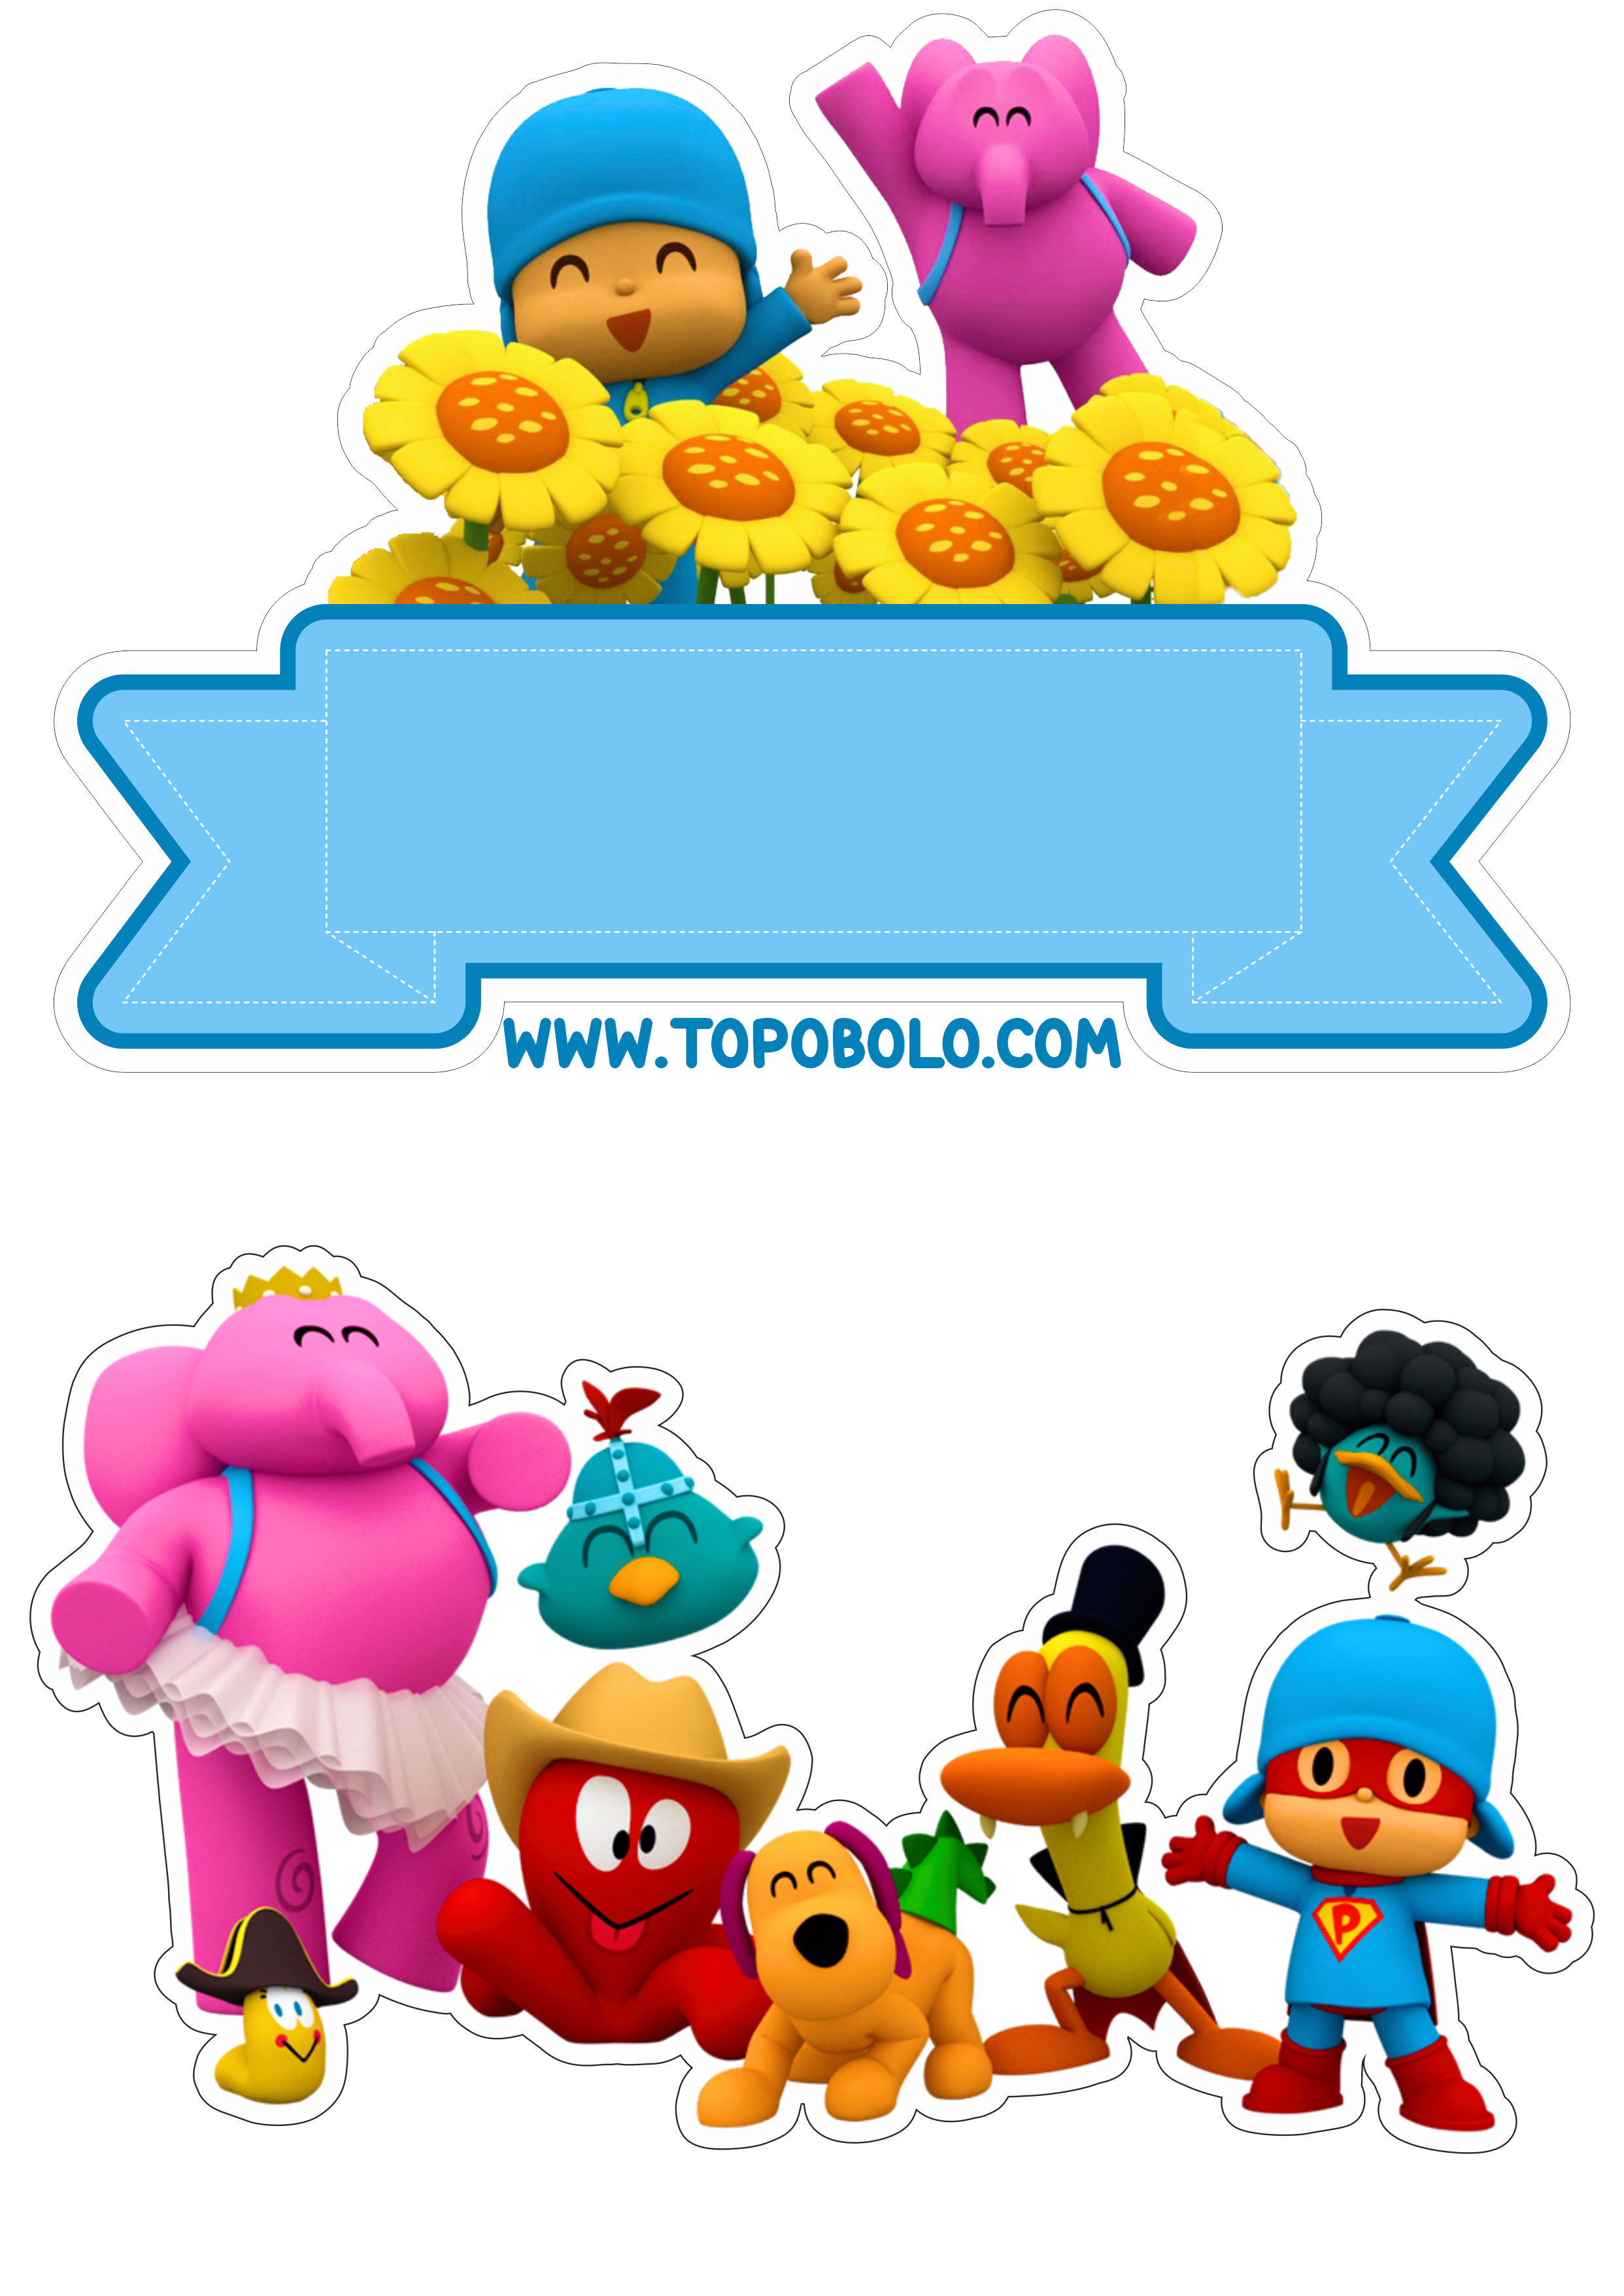 Topo de bolo Pocoyo festa de aniversário infantil decoração festa pronta arquivo para recorte cartoon png